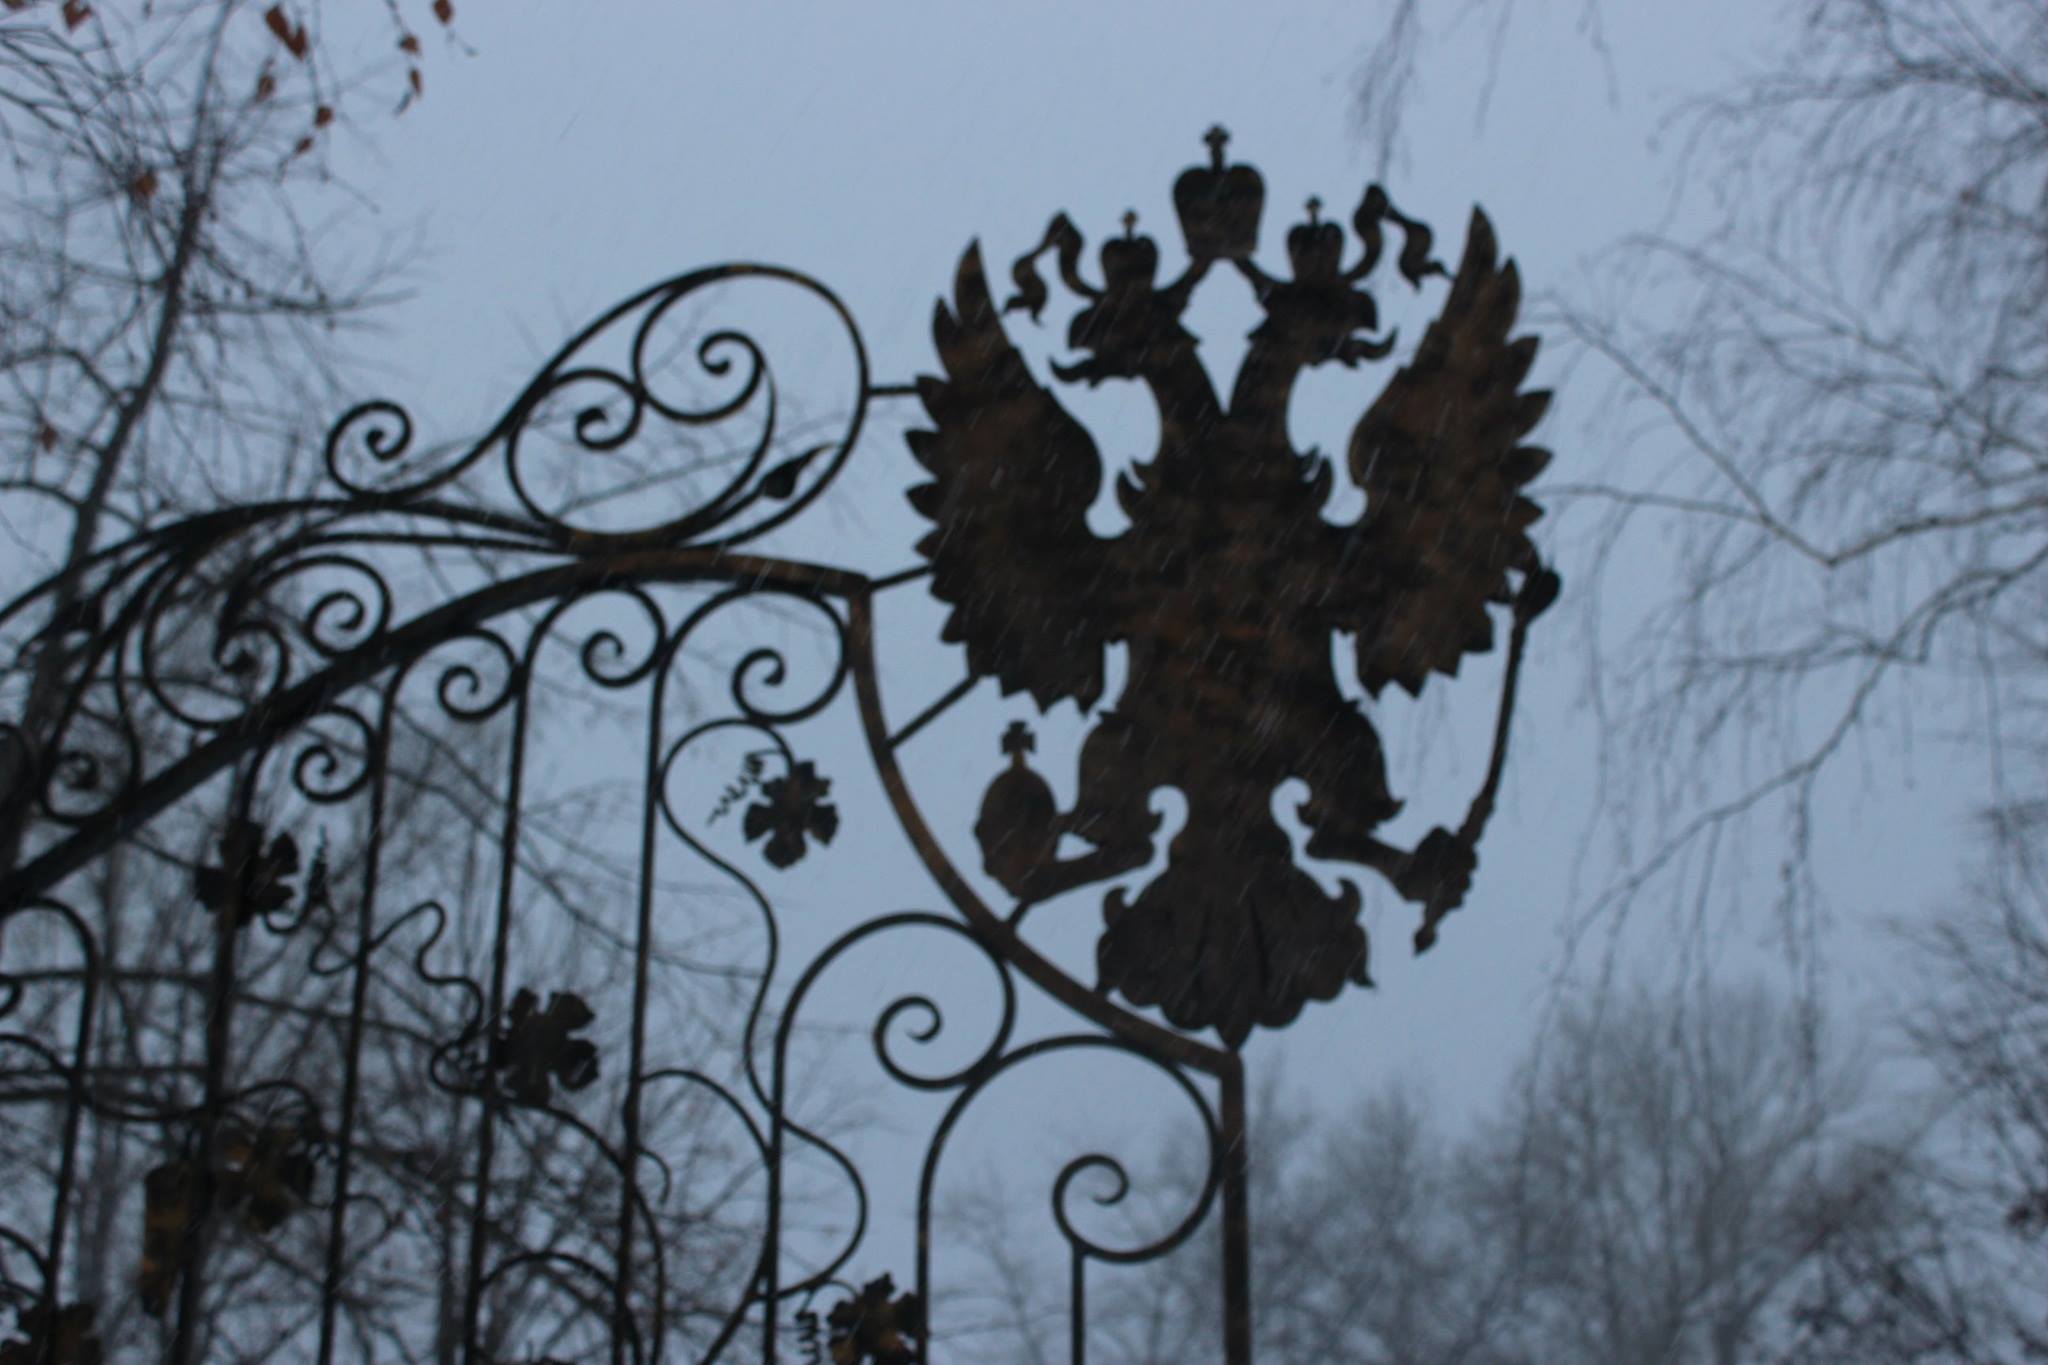 Новость - События - Зрада: на Игрени на храме нашли российскую символику